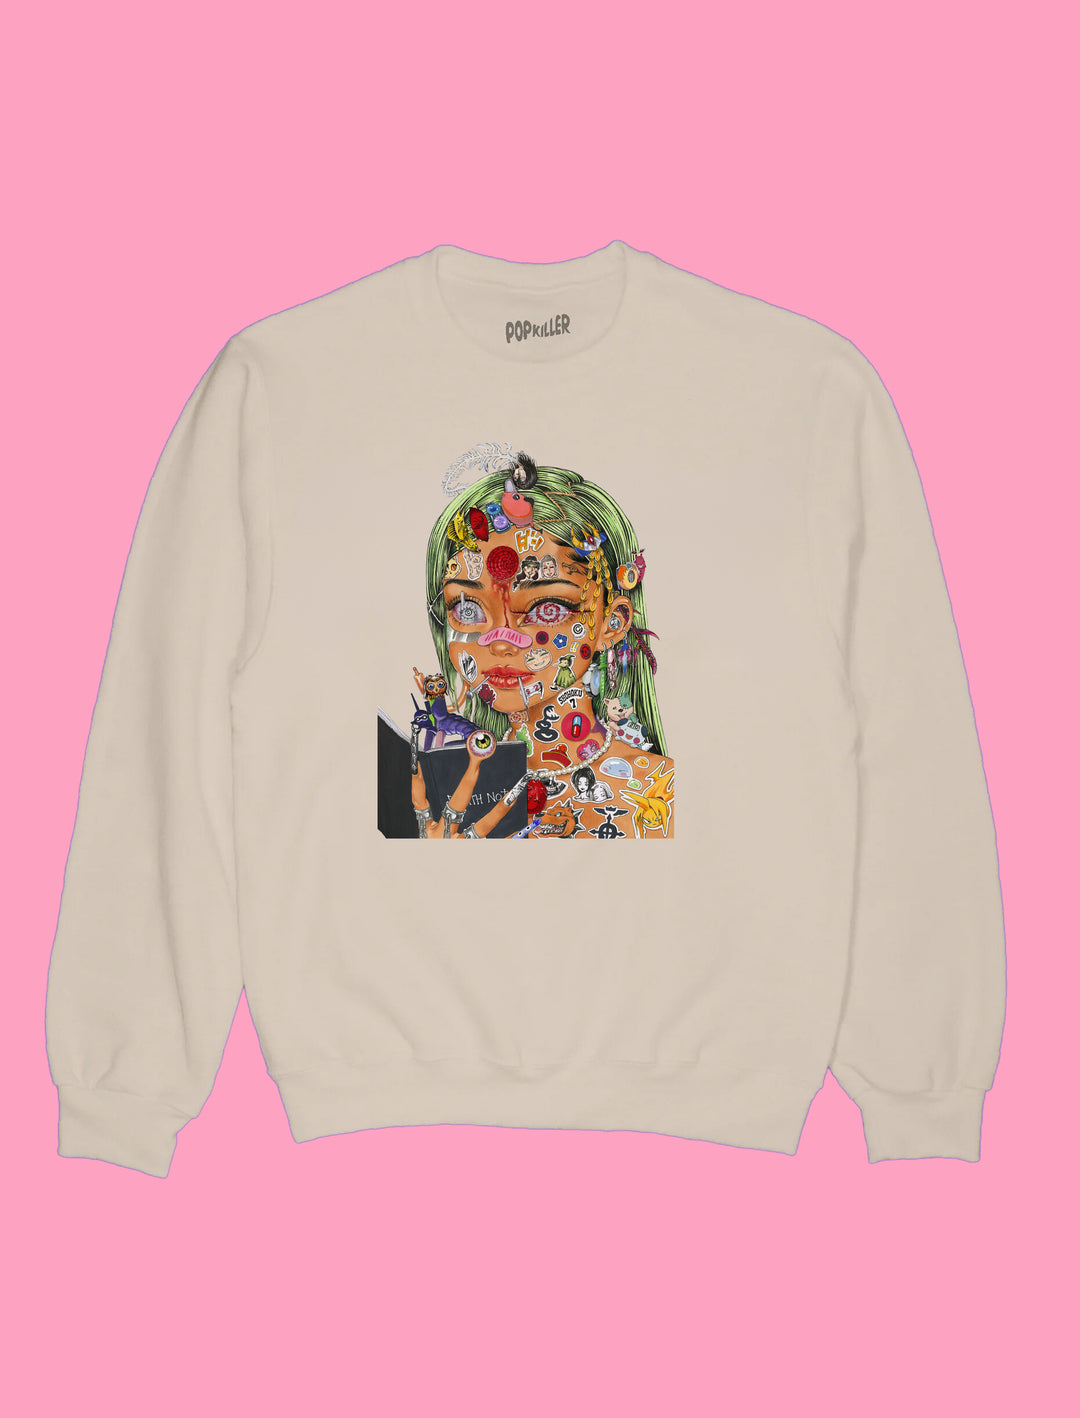 Popkiller Artist Series Cogumeli Manga Obsession Pullover Sweatshirt